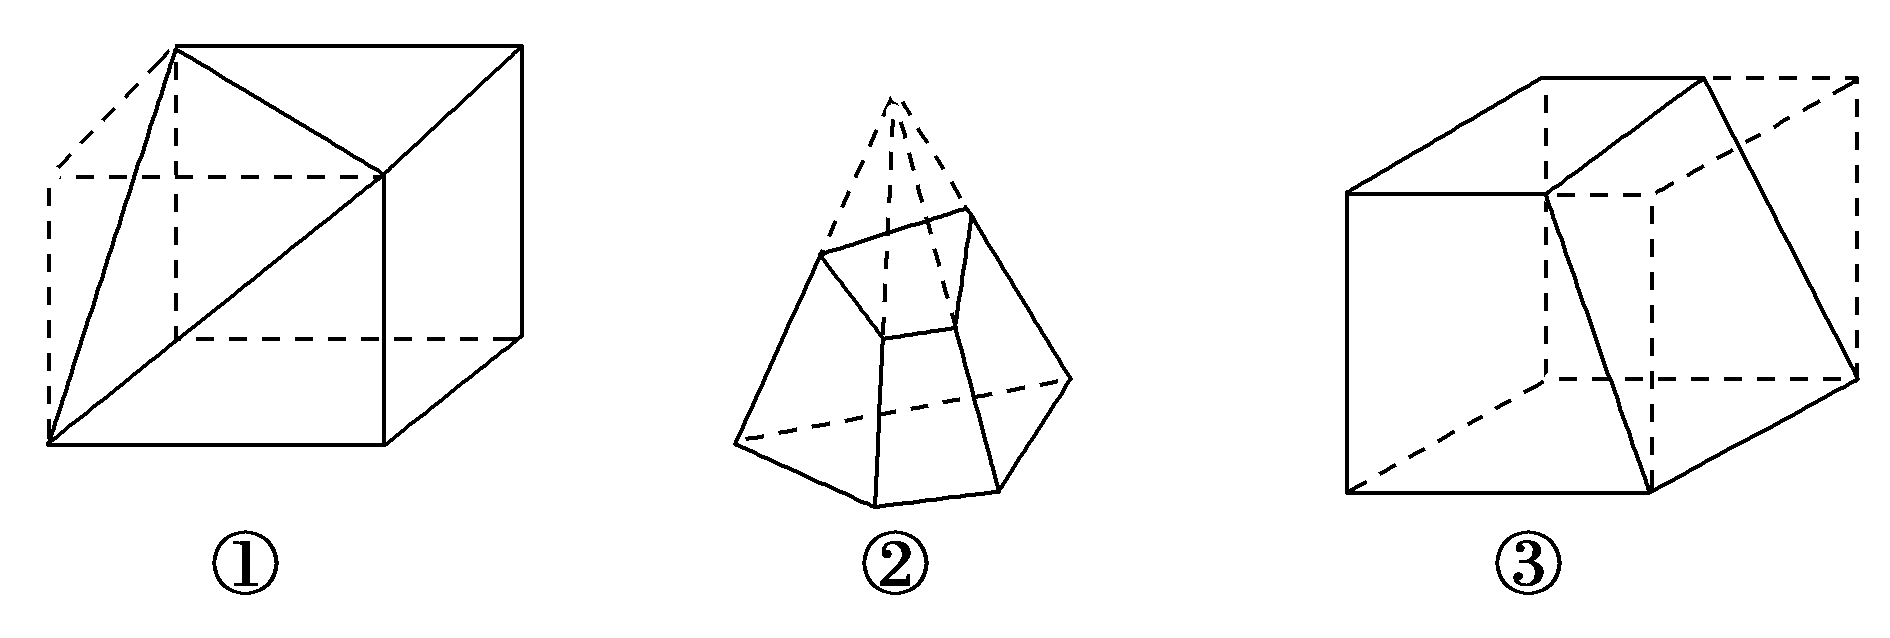 画一个三棱锥和一个四棱台.